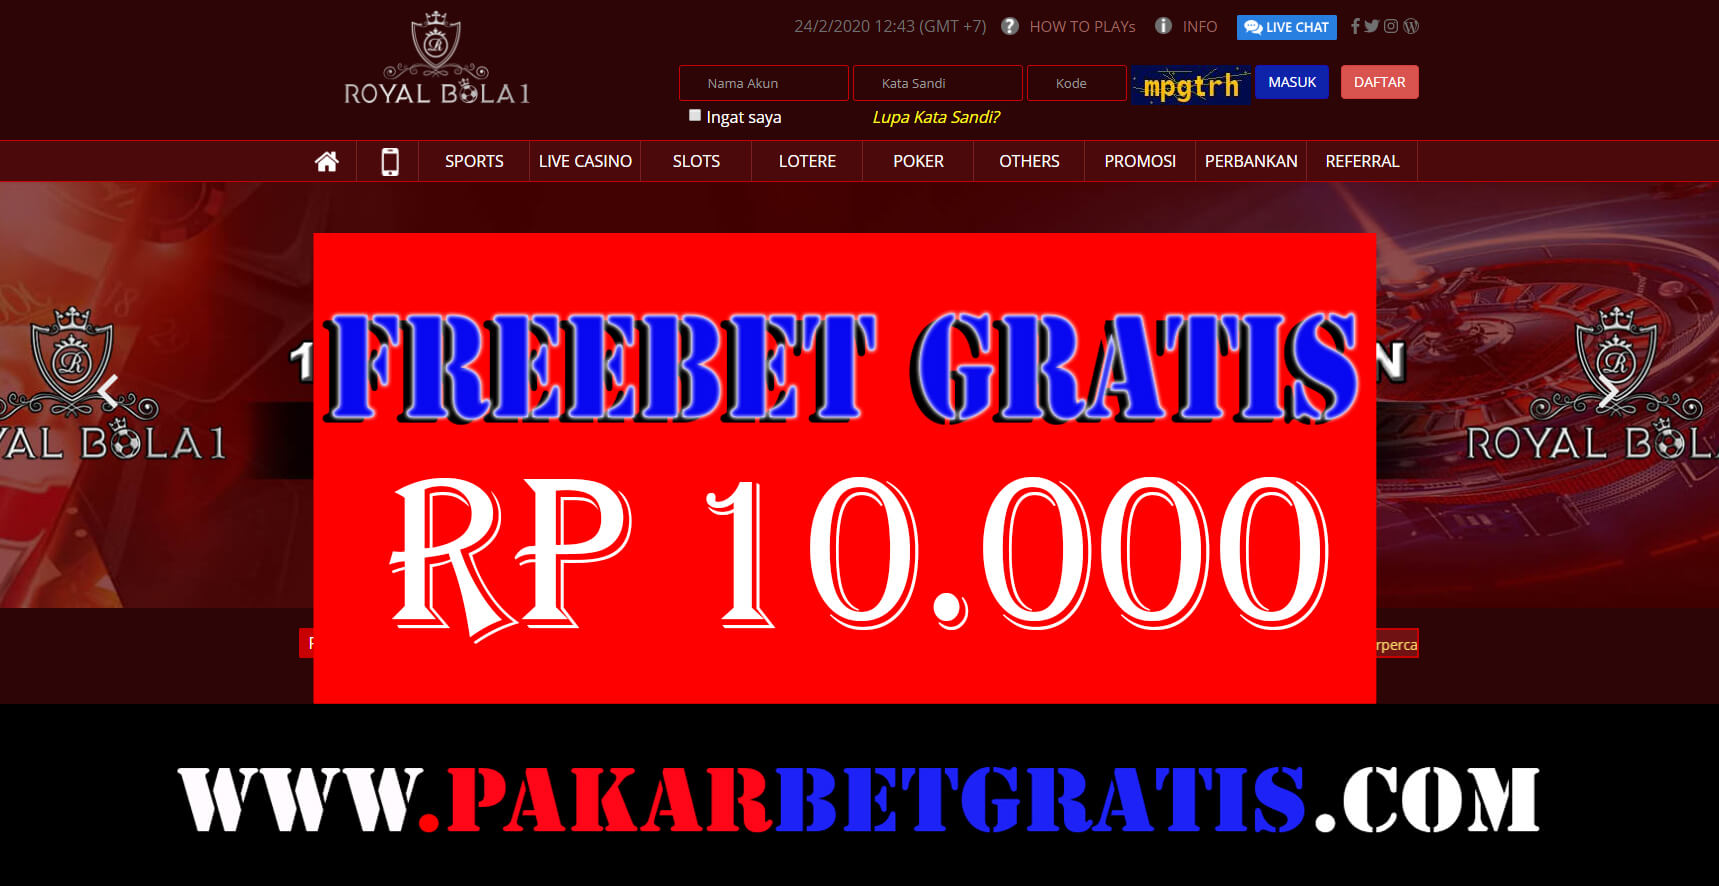 Freebet Gratis Royalbola1 Rp 10.000 Tanpa deposit